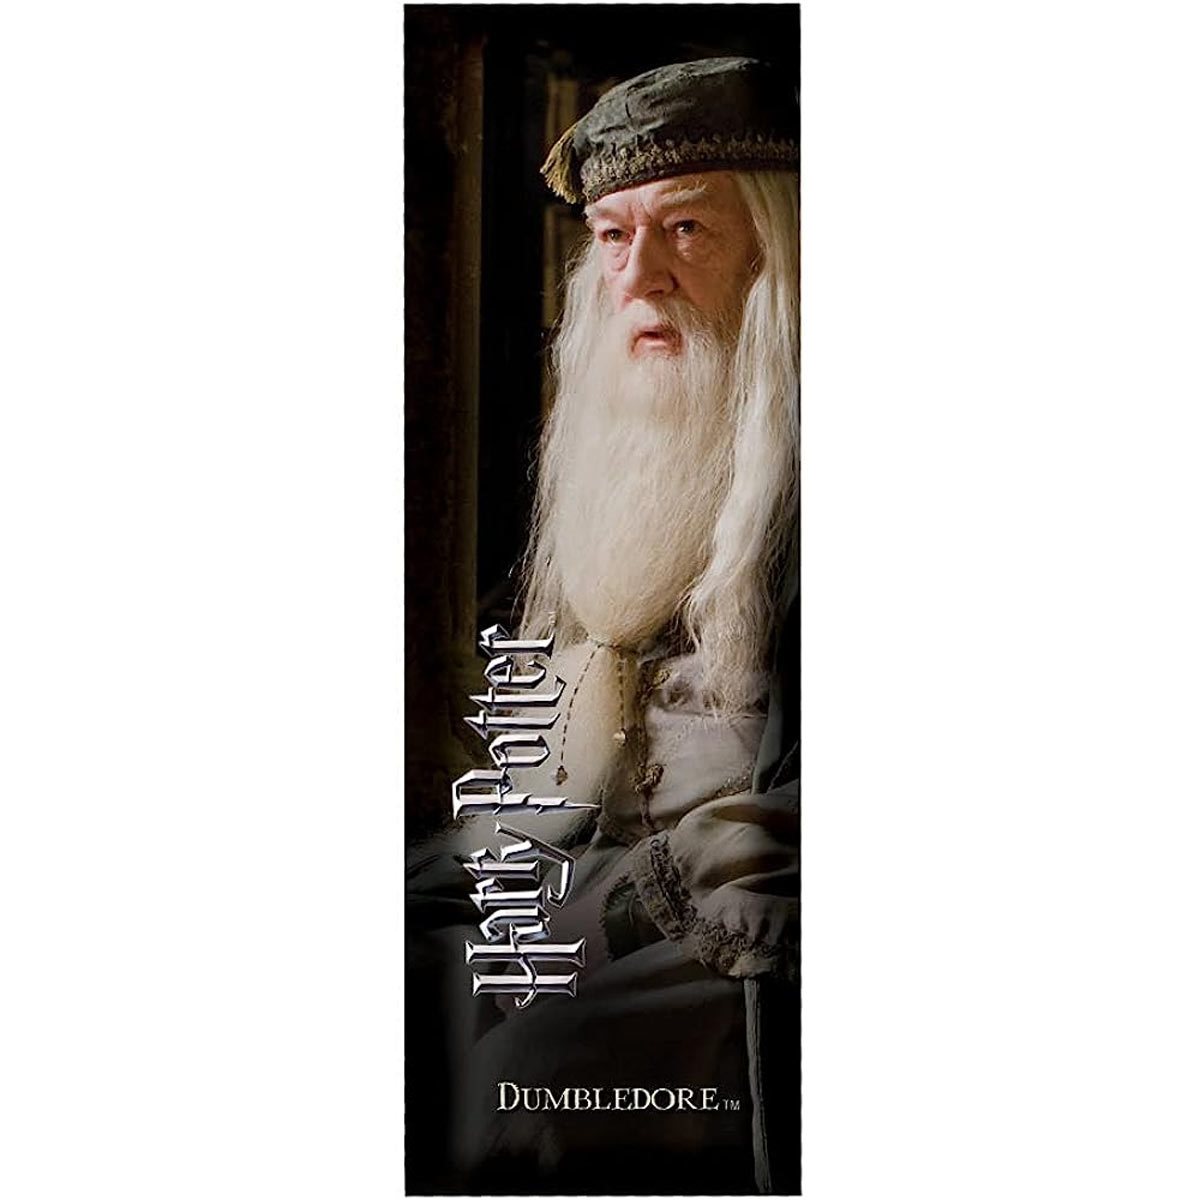 Harry Potter Professor Albus Dumbledore Journal with Wand Pen